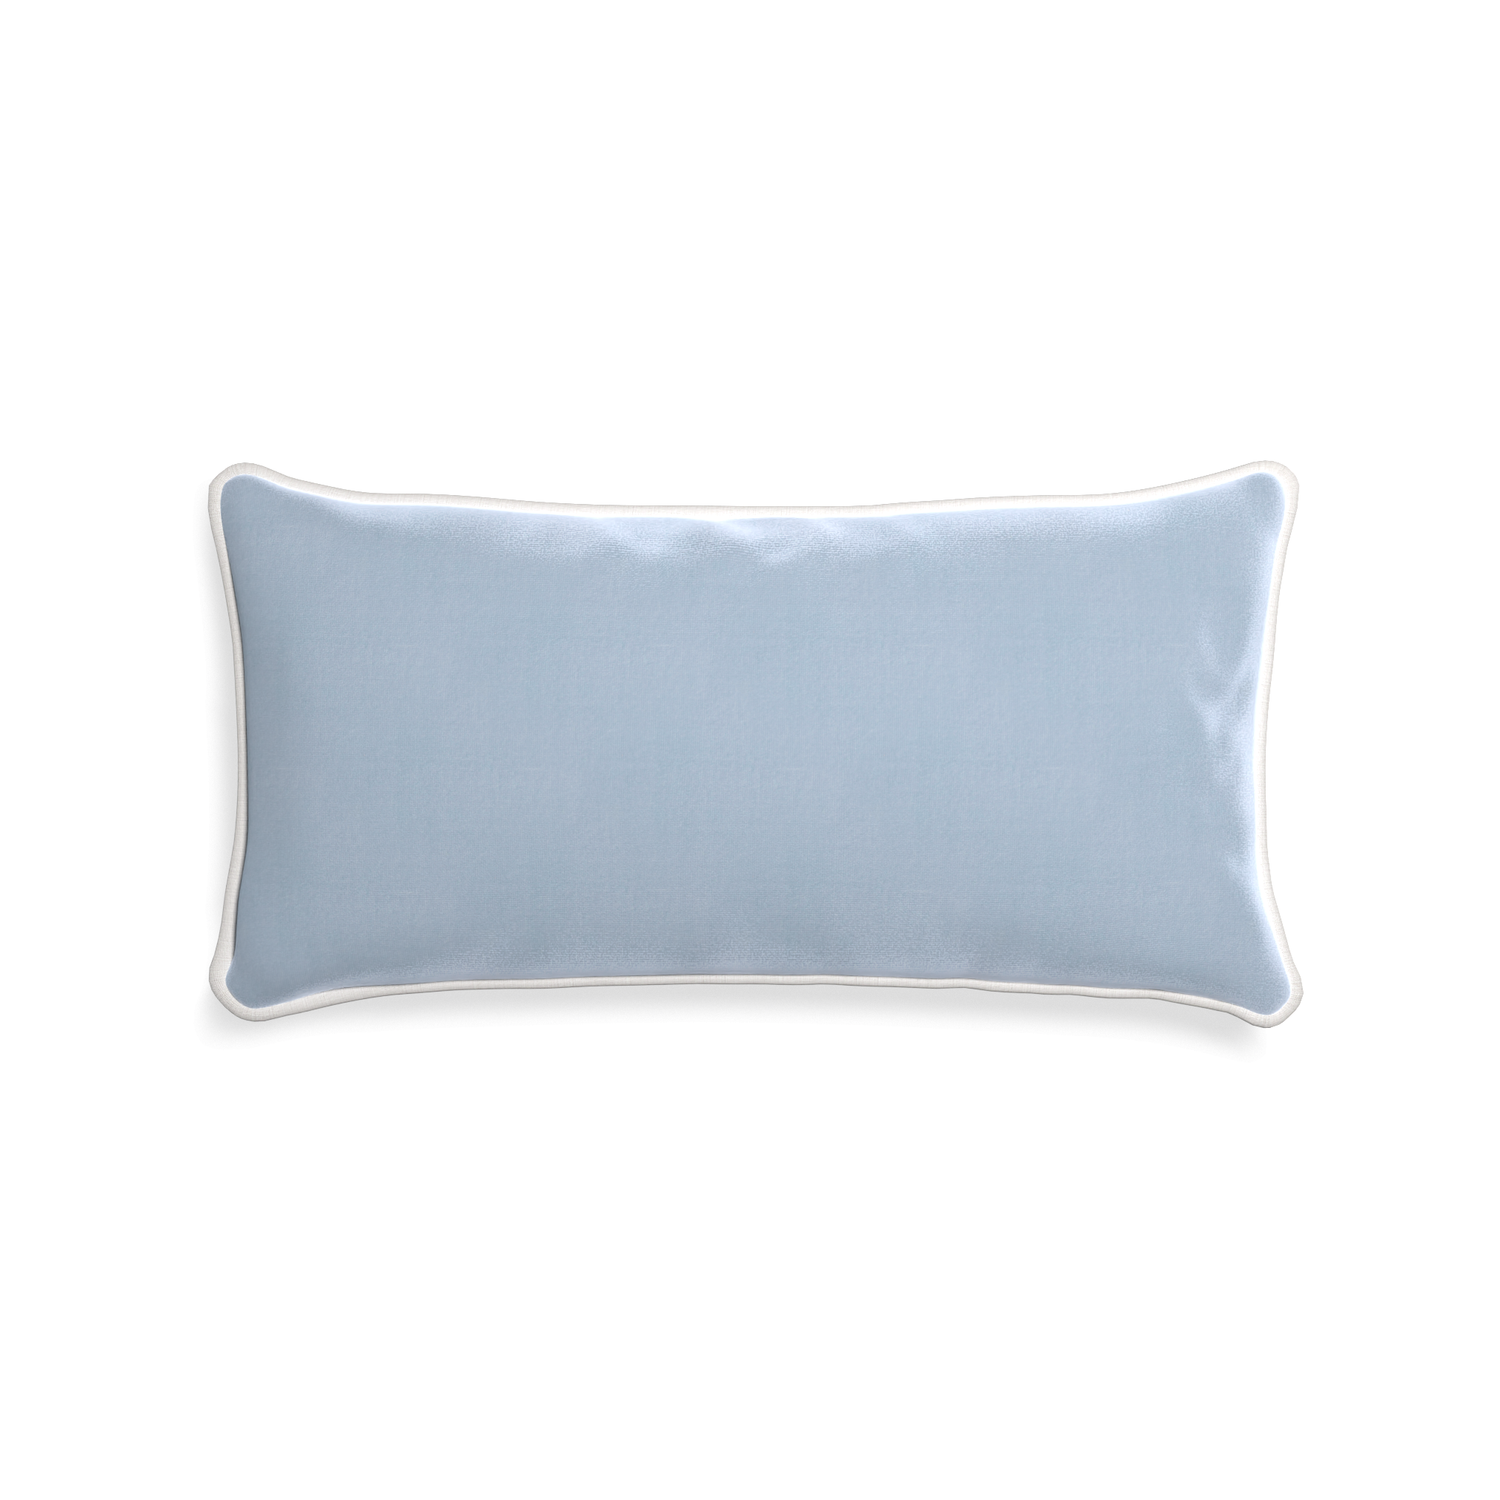 rectangle light blue velvet pillow with white piping